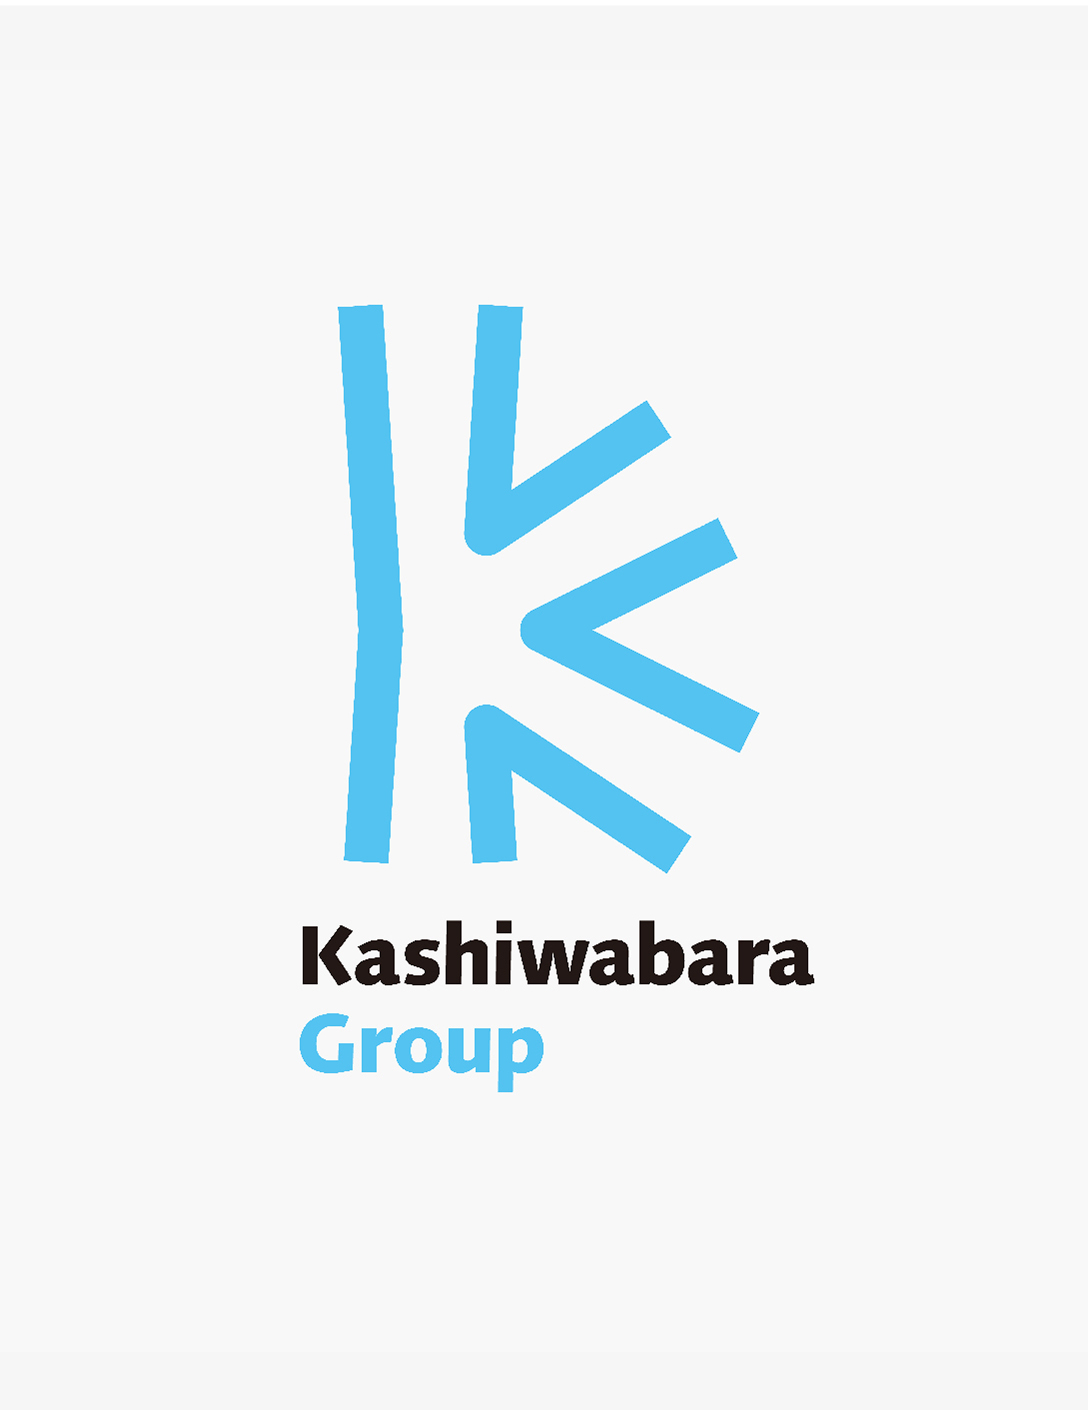 Kashiwabara Group Visual Identity